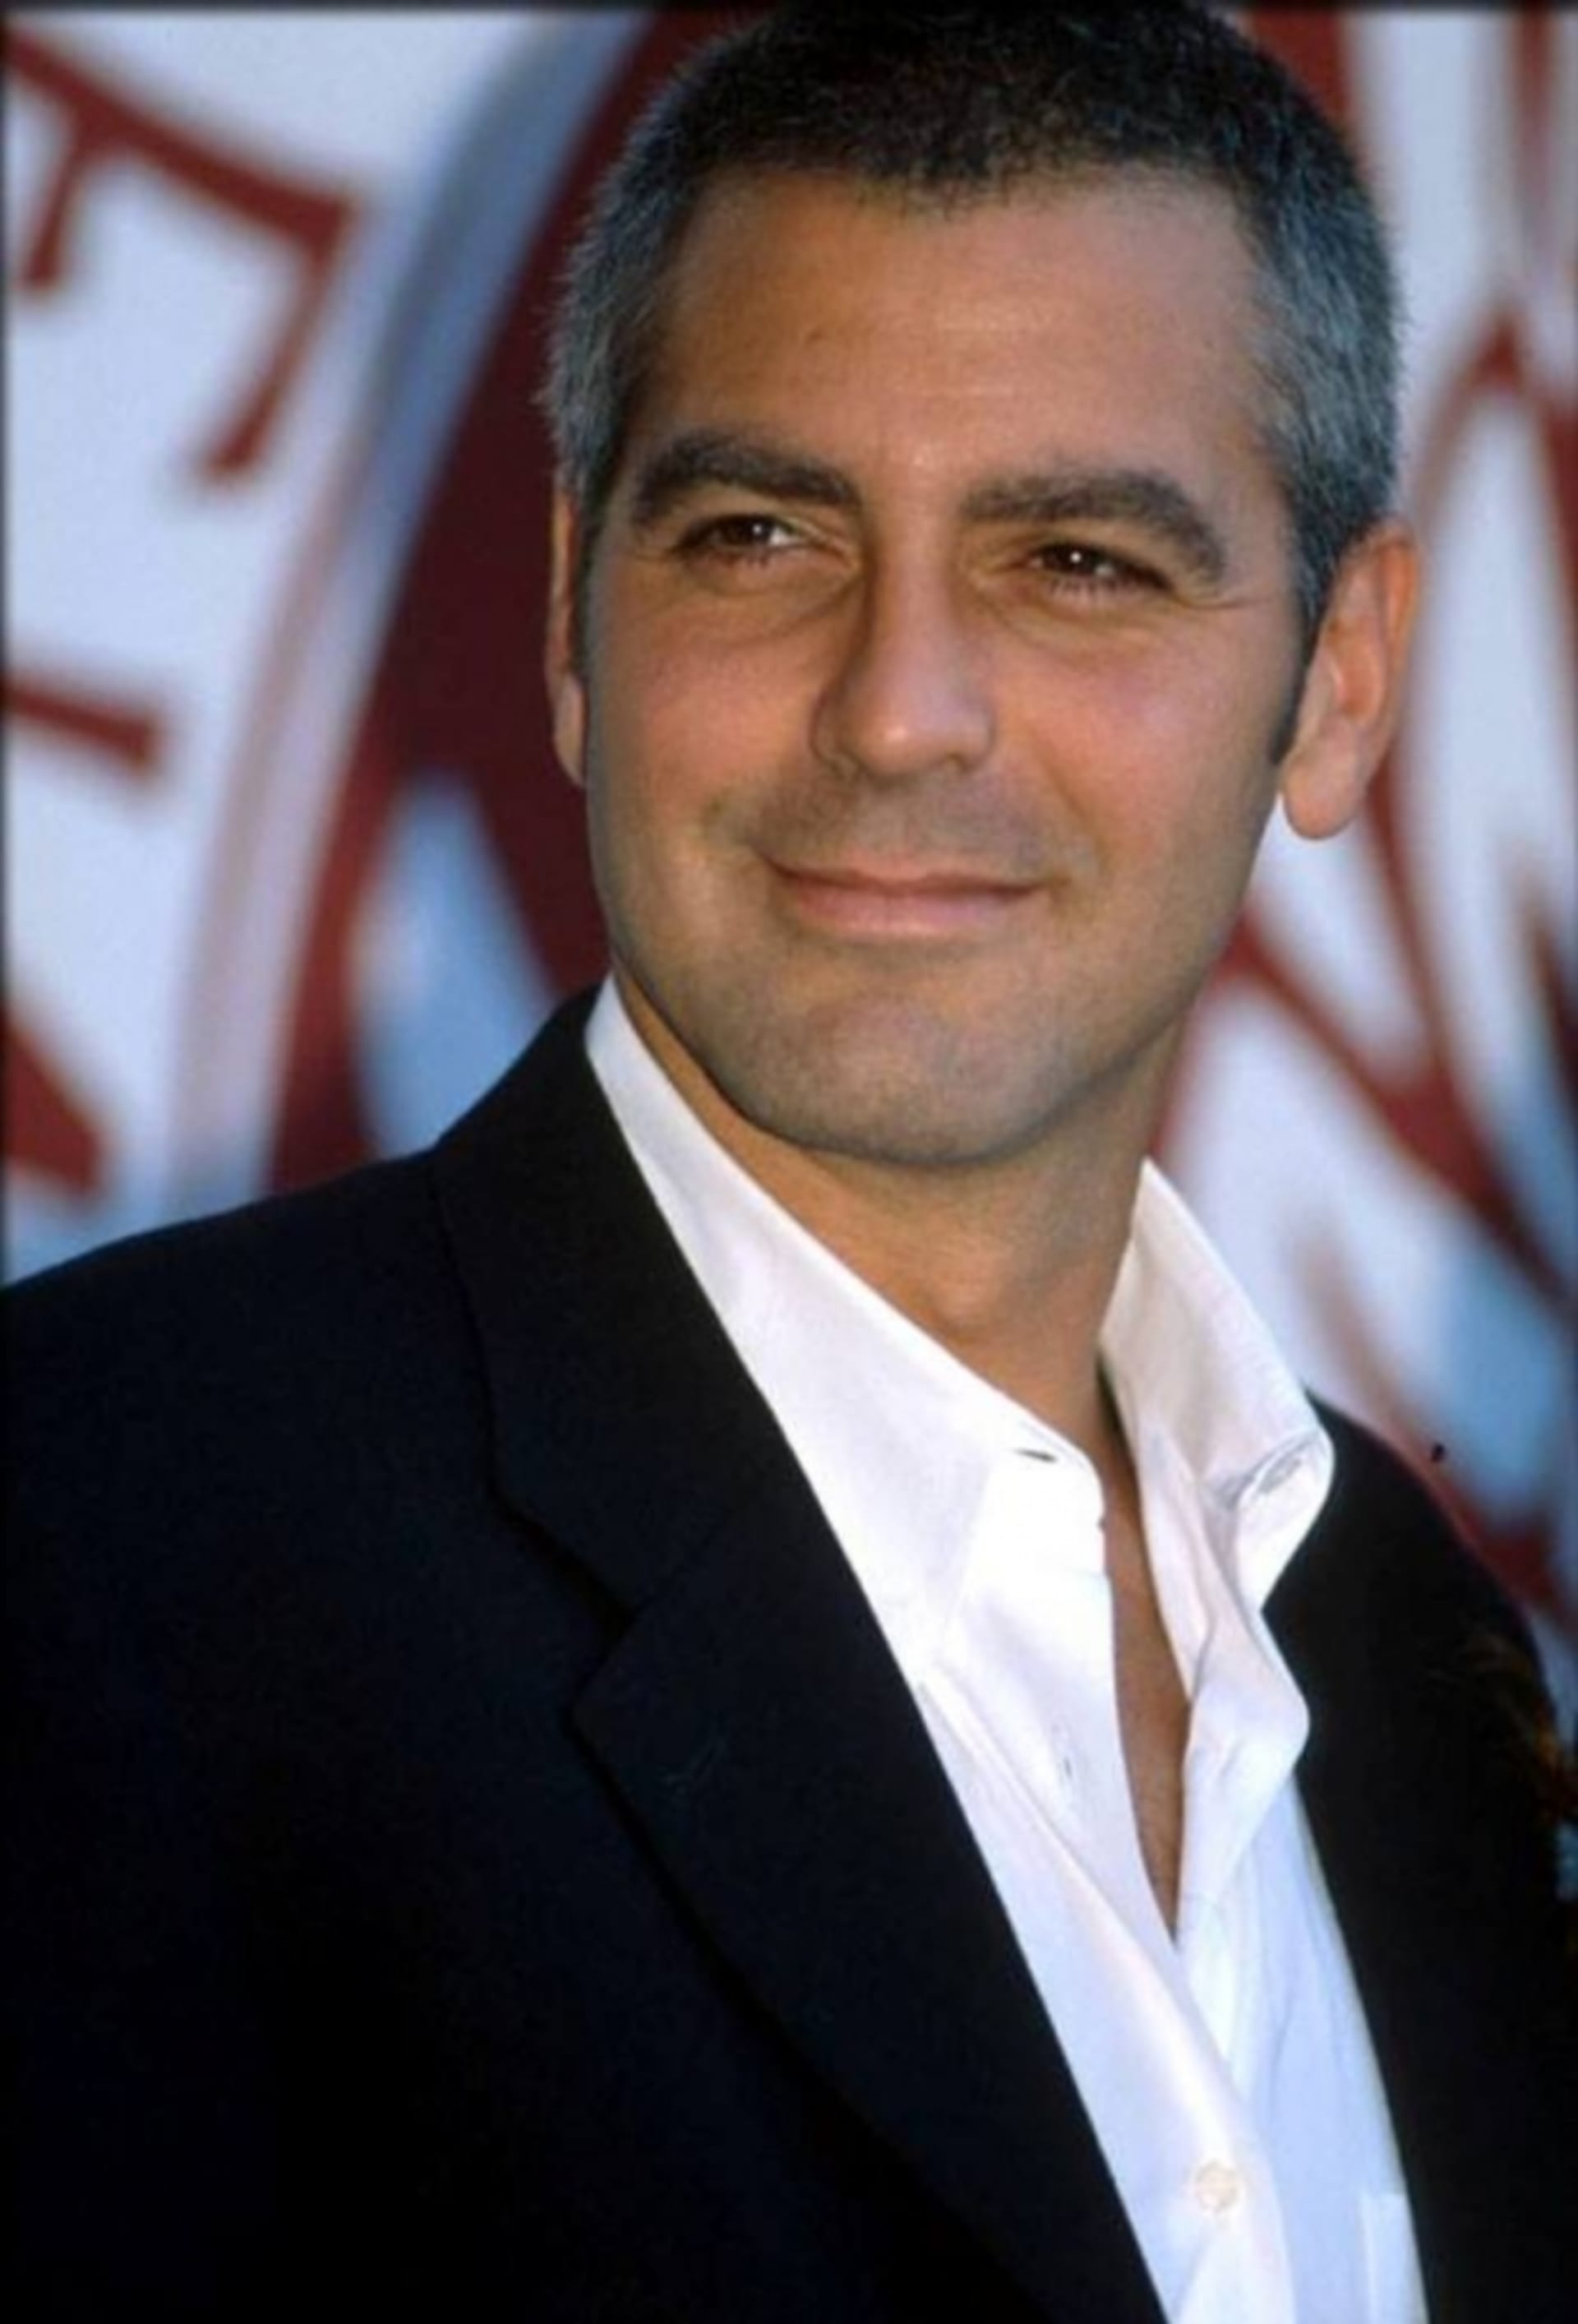 Najde konečně herec George Clooney tu pravou lásku?